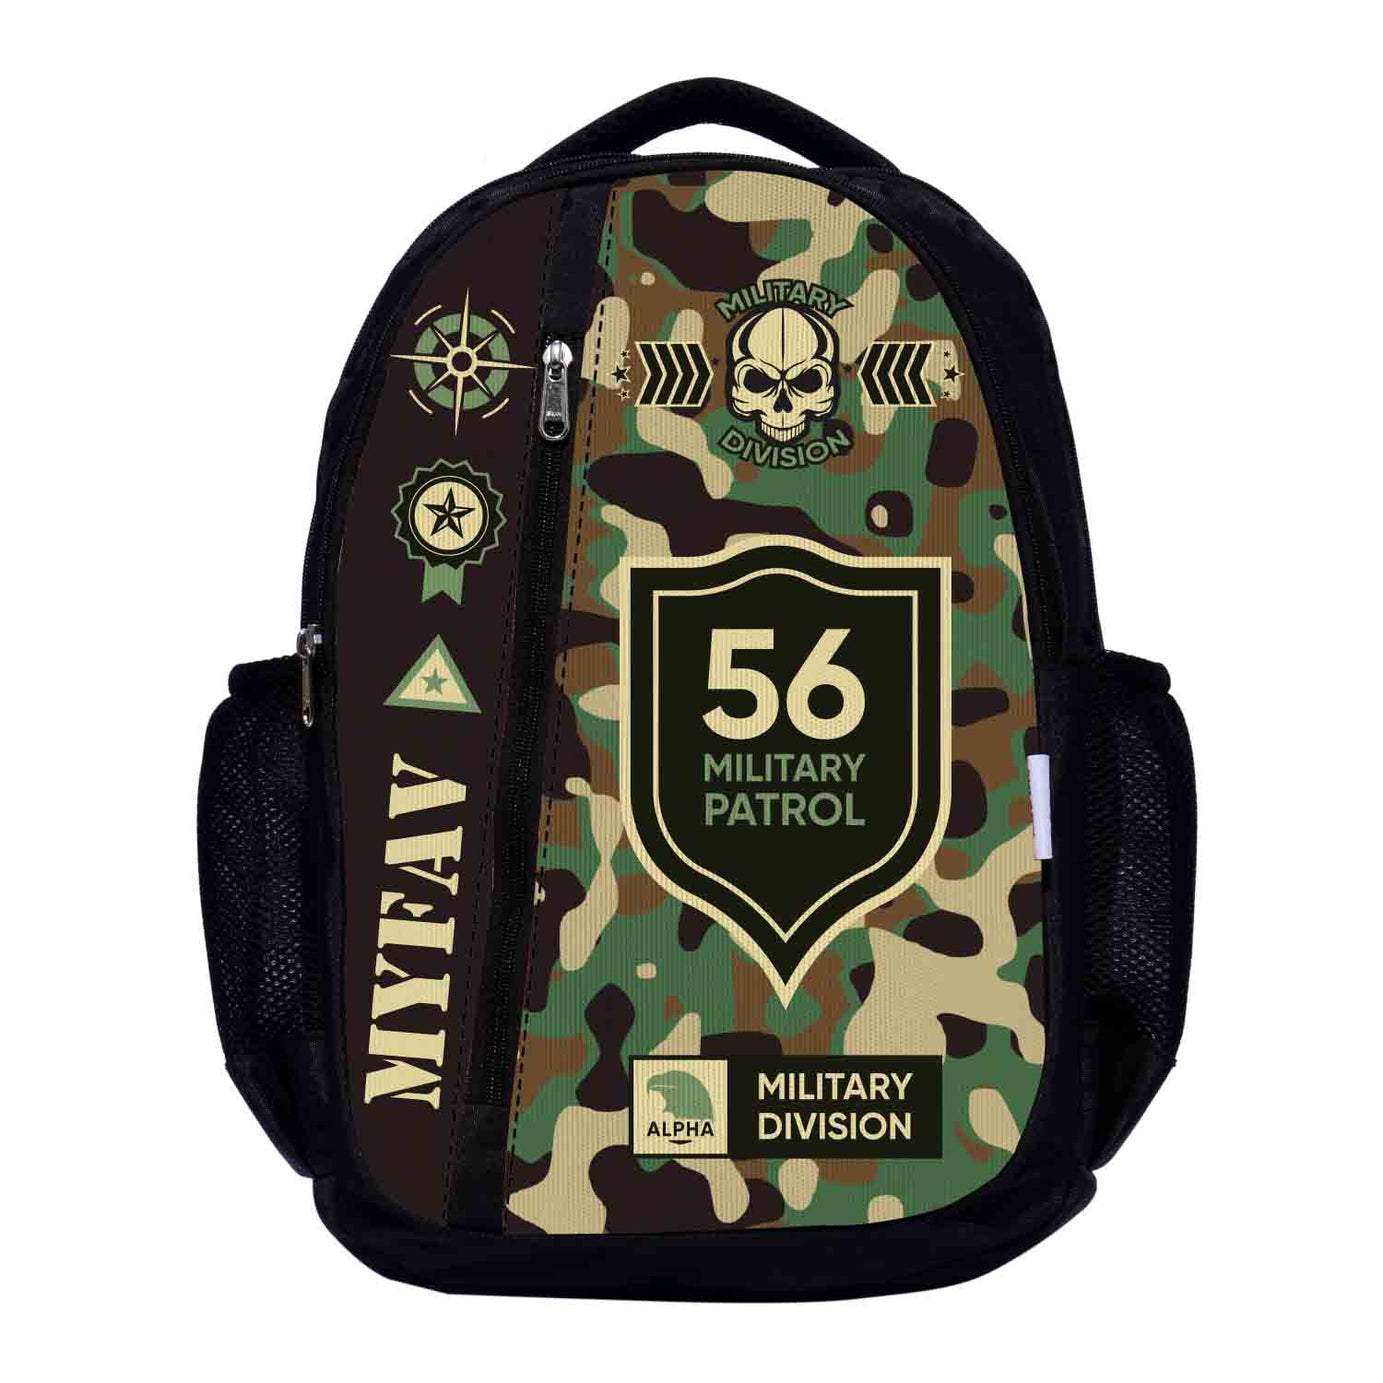 My Fav Camouflage Laptop Backpack For Men Women / School Bag for Boys Girls